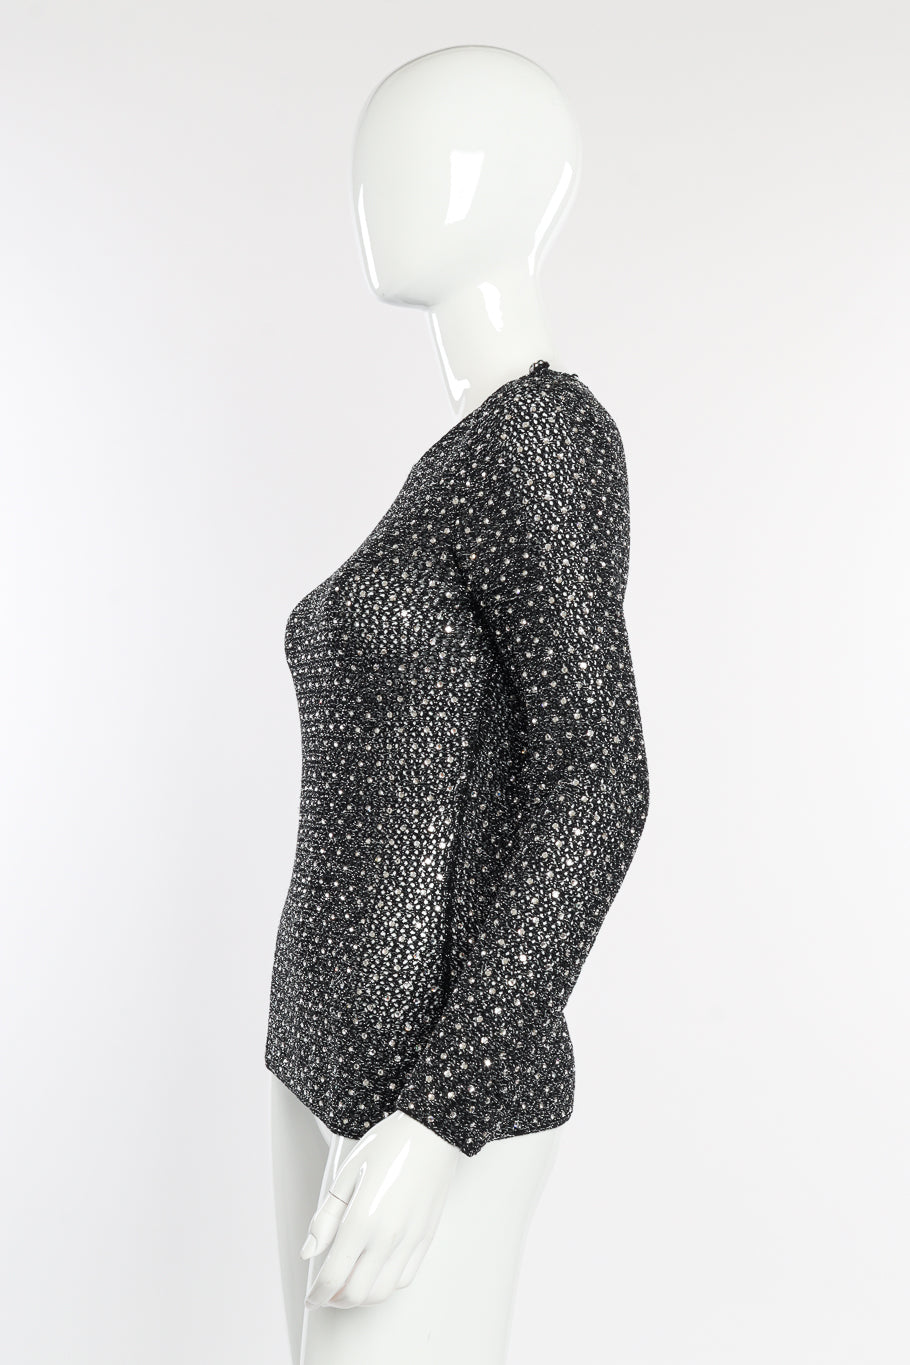 Vintage Adolfo Crystal Open Knit Top side on mannequin @recessla